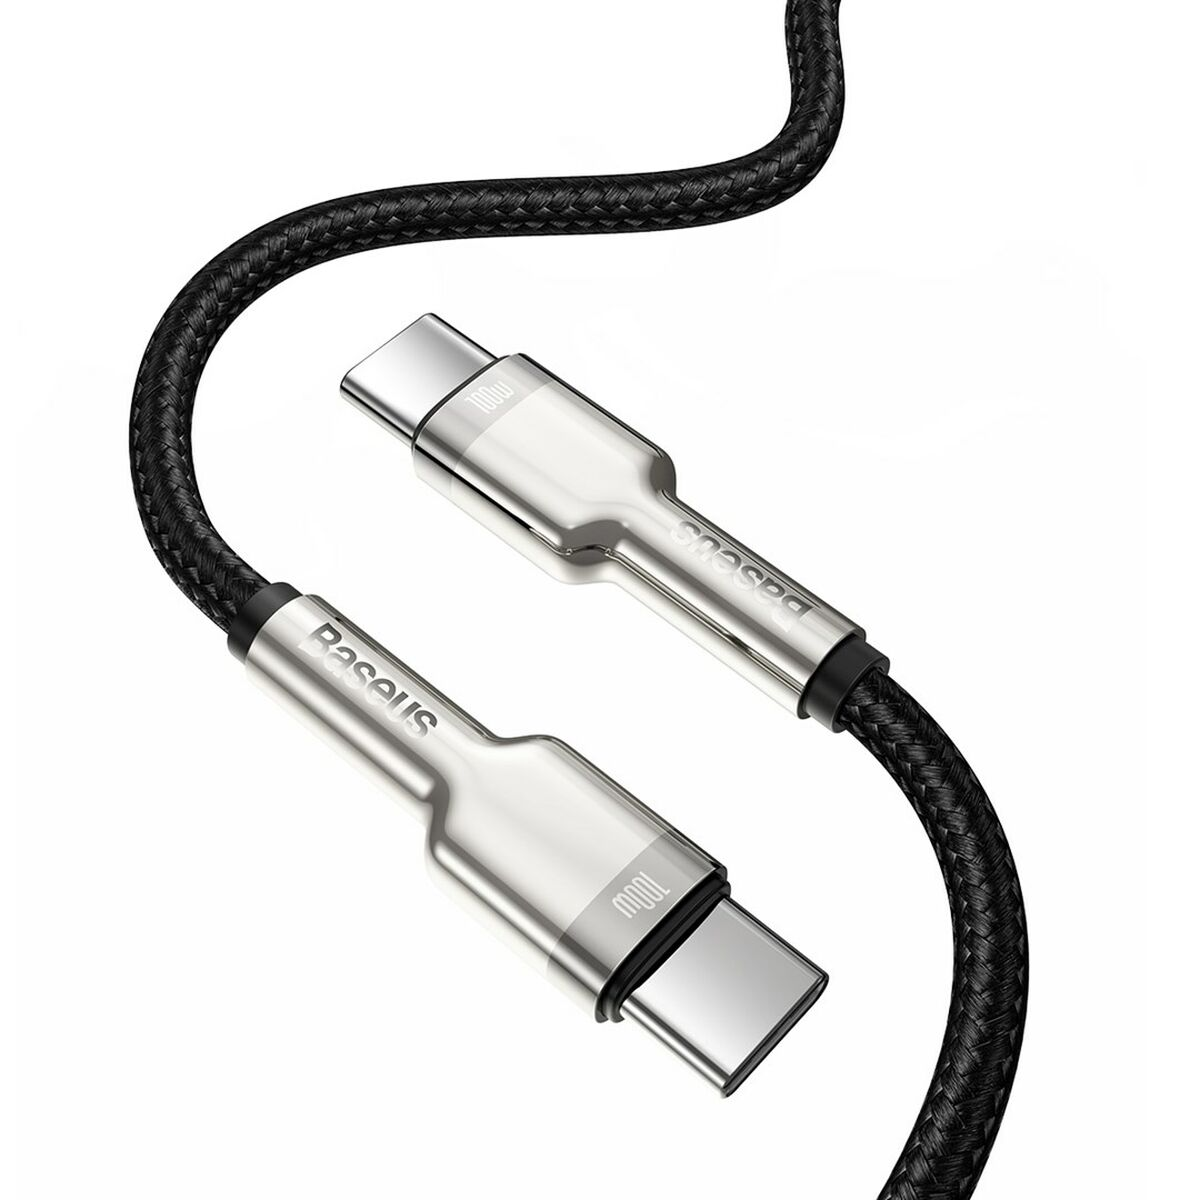 CATJK-C01 USB Kabel C BASEUS